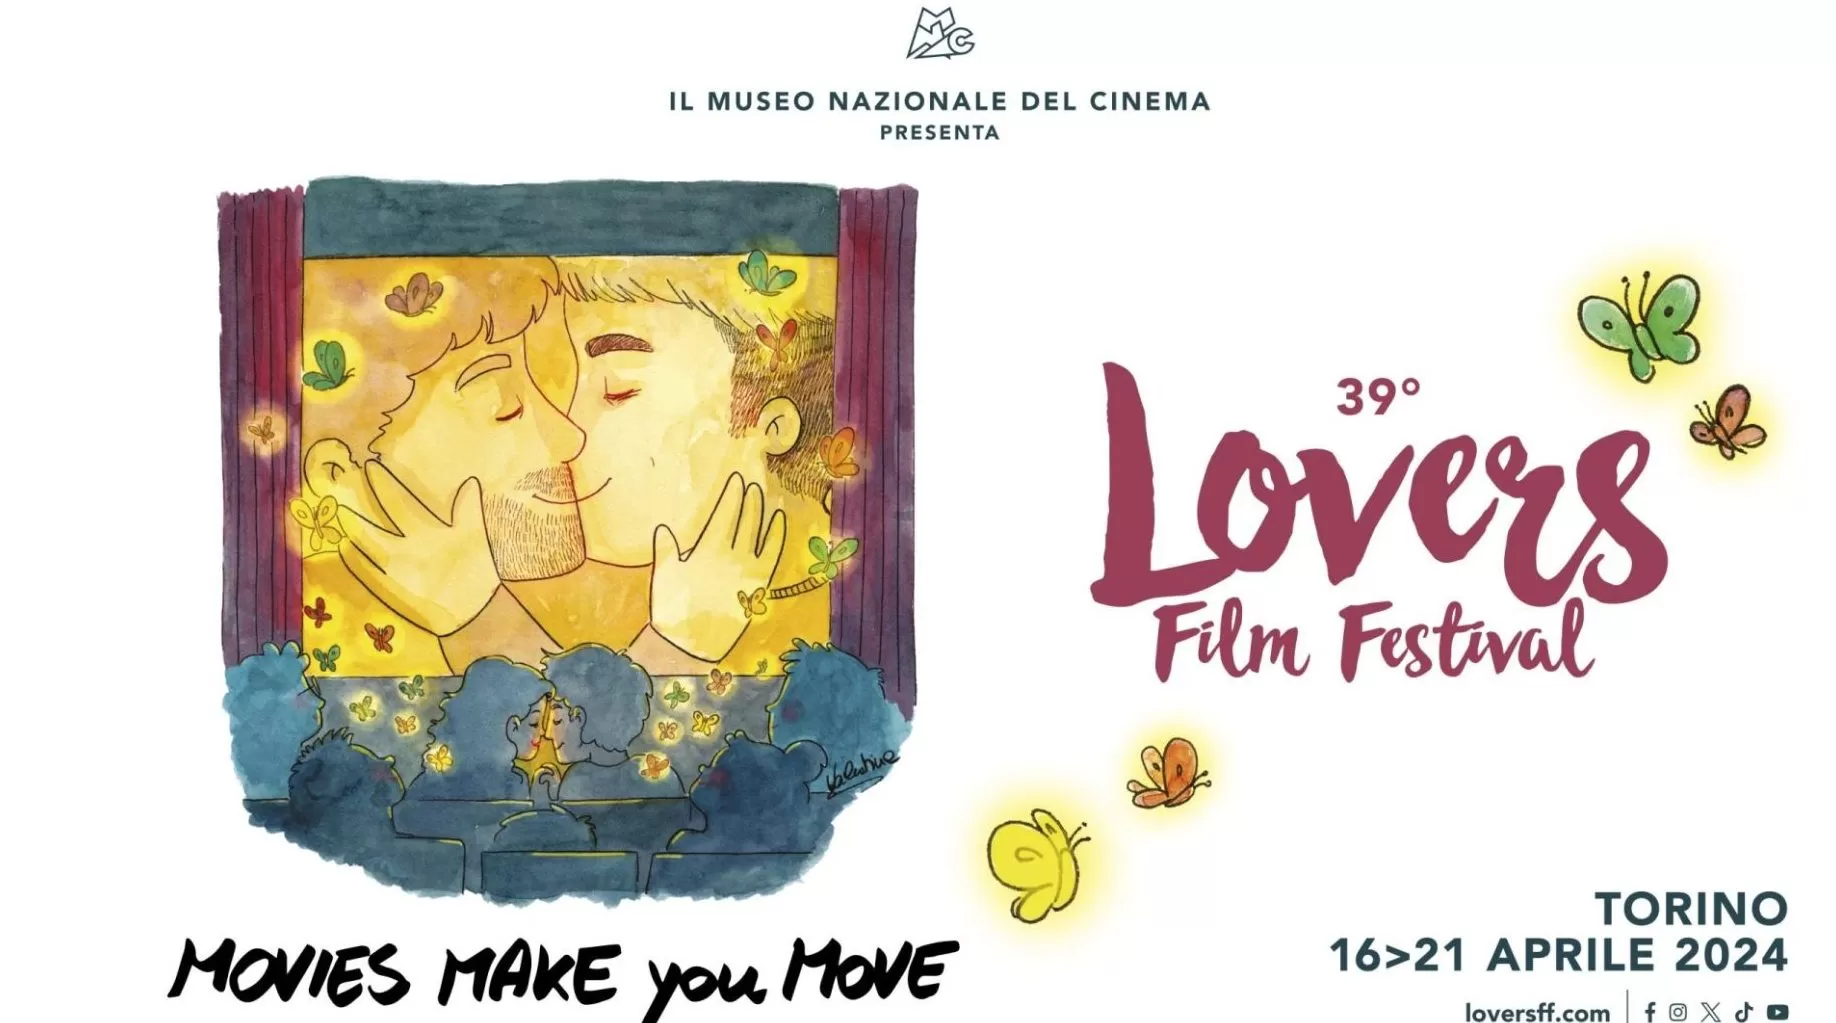 Lovers Film Festival: un’anteprima della serata inaugurale al cinema Massimo